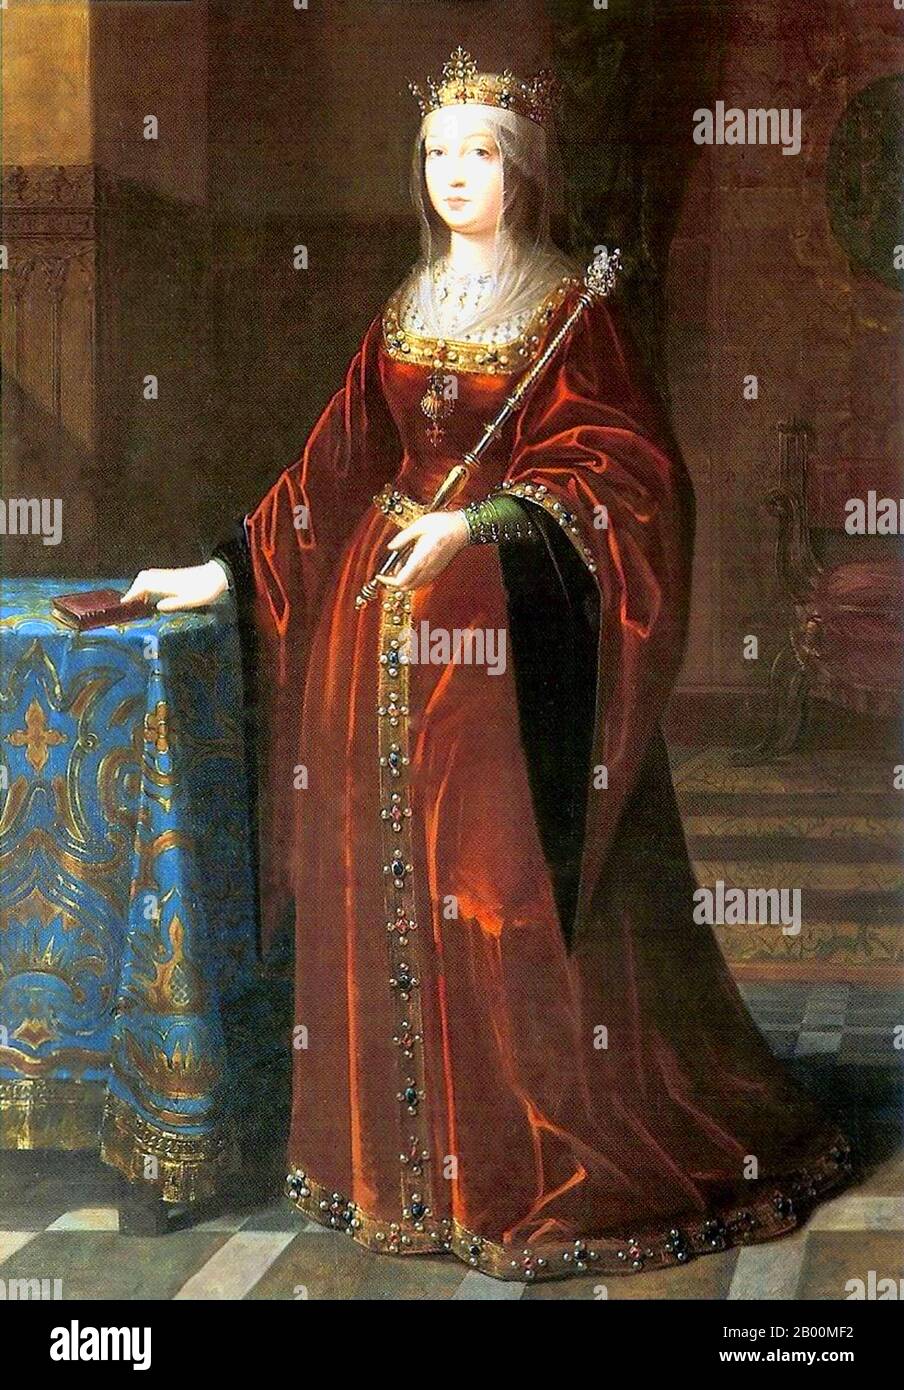 Espagne: 'Isabella I (1451-1504), Reine de Castille et Léon'. Peinture à l'huile sur toile par Luis de Madrazo (1825-1897), c. 1848. Isabella I (espagnole: Isabel I, Ysabel, anglicisée comme Elizabeth) (22 avril 1451-26 novembre 1504) était reine de Castille et Léon. Elle et son mari Ferdinand II d'Aragon apporta la stabilité aux deux royaumes qui devint la base de l'unification de l'Espagne. Plus tard, les deux ont posé les bases de l'unification politique de l'Espagne sous leur petit-fils, Charles V, l'empereur Saint-Romain. Banque D'Images